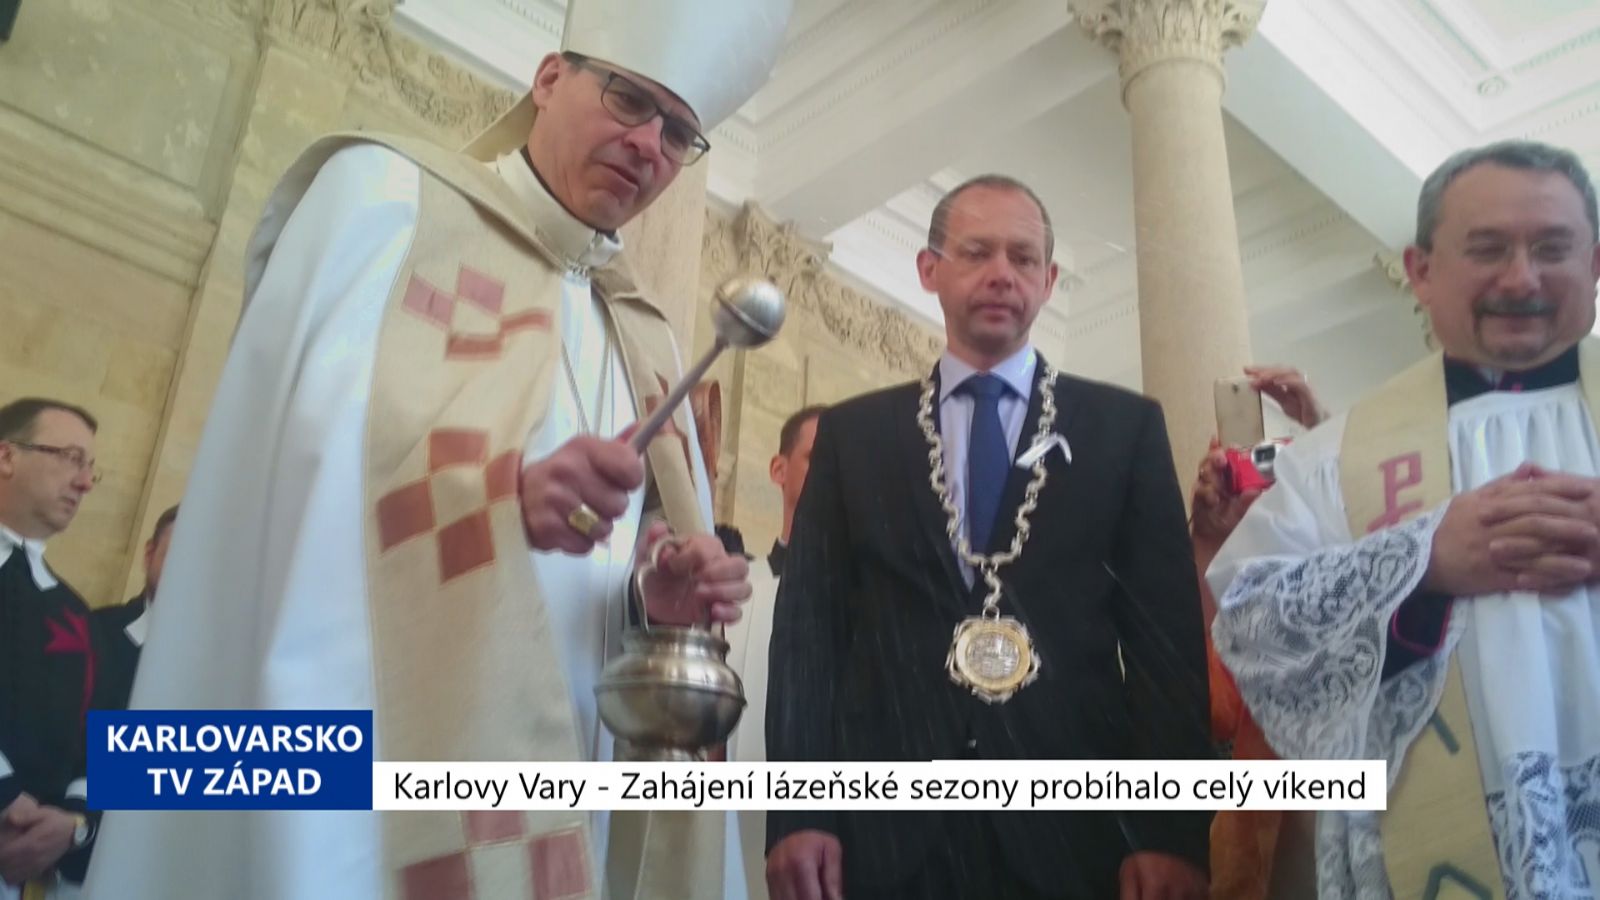 Karlovy Vary: Zahájení lázeňské sezóny probíhalo celý víkend (TV Západ)